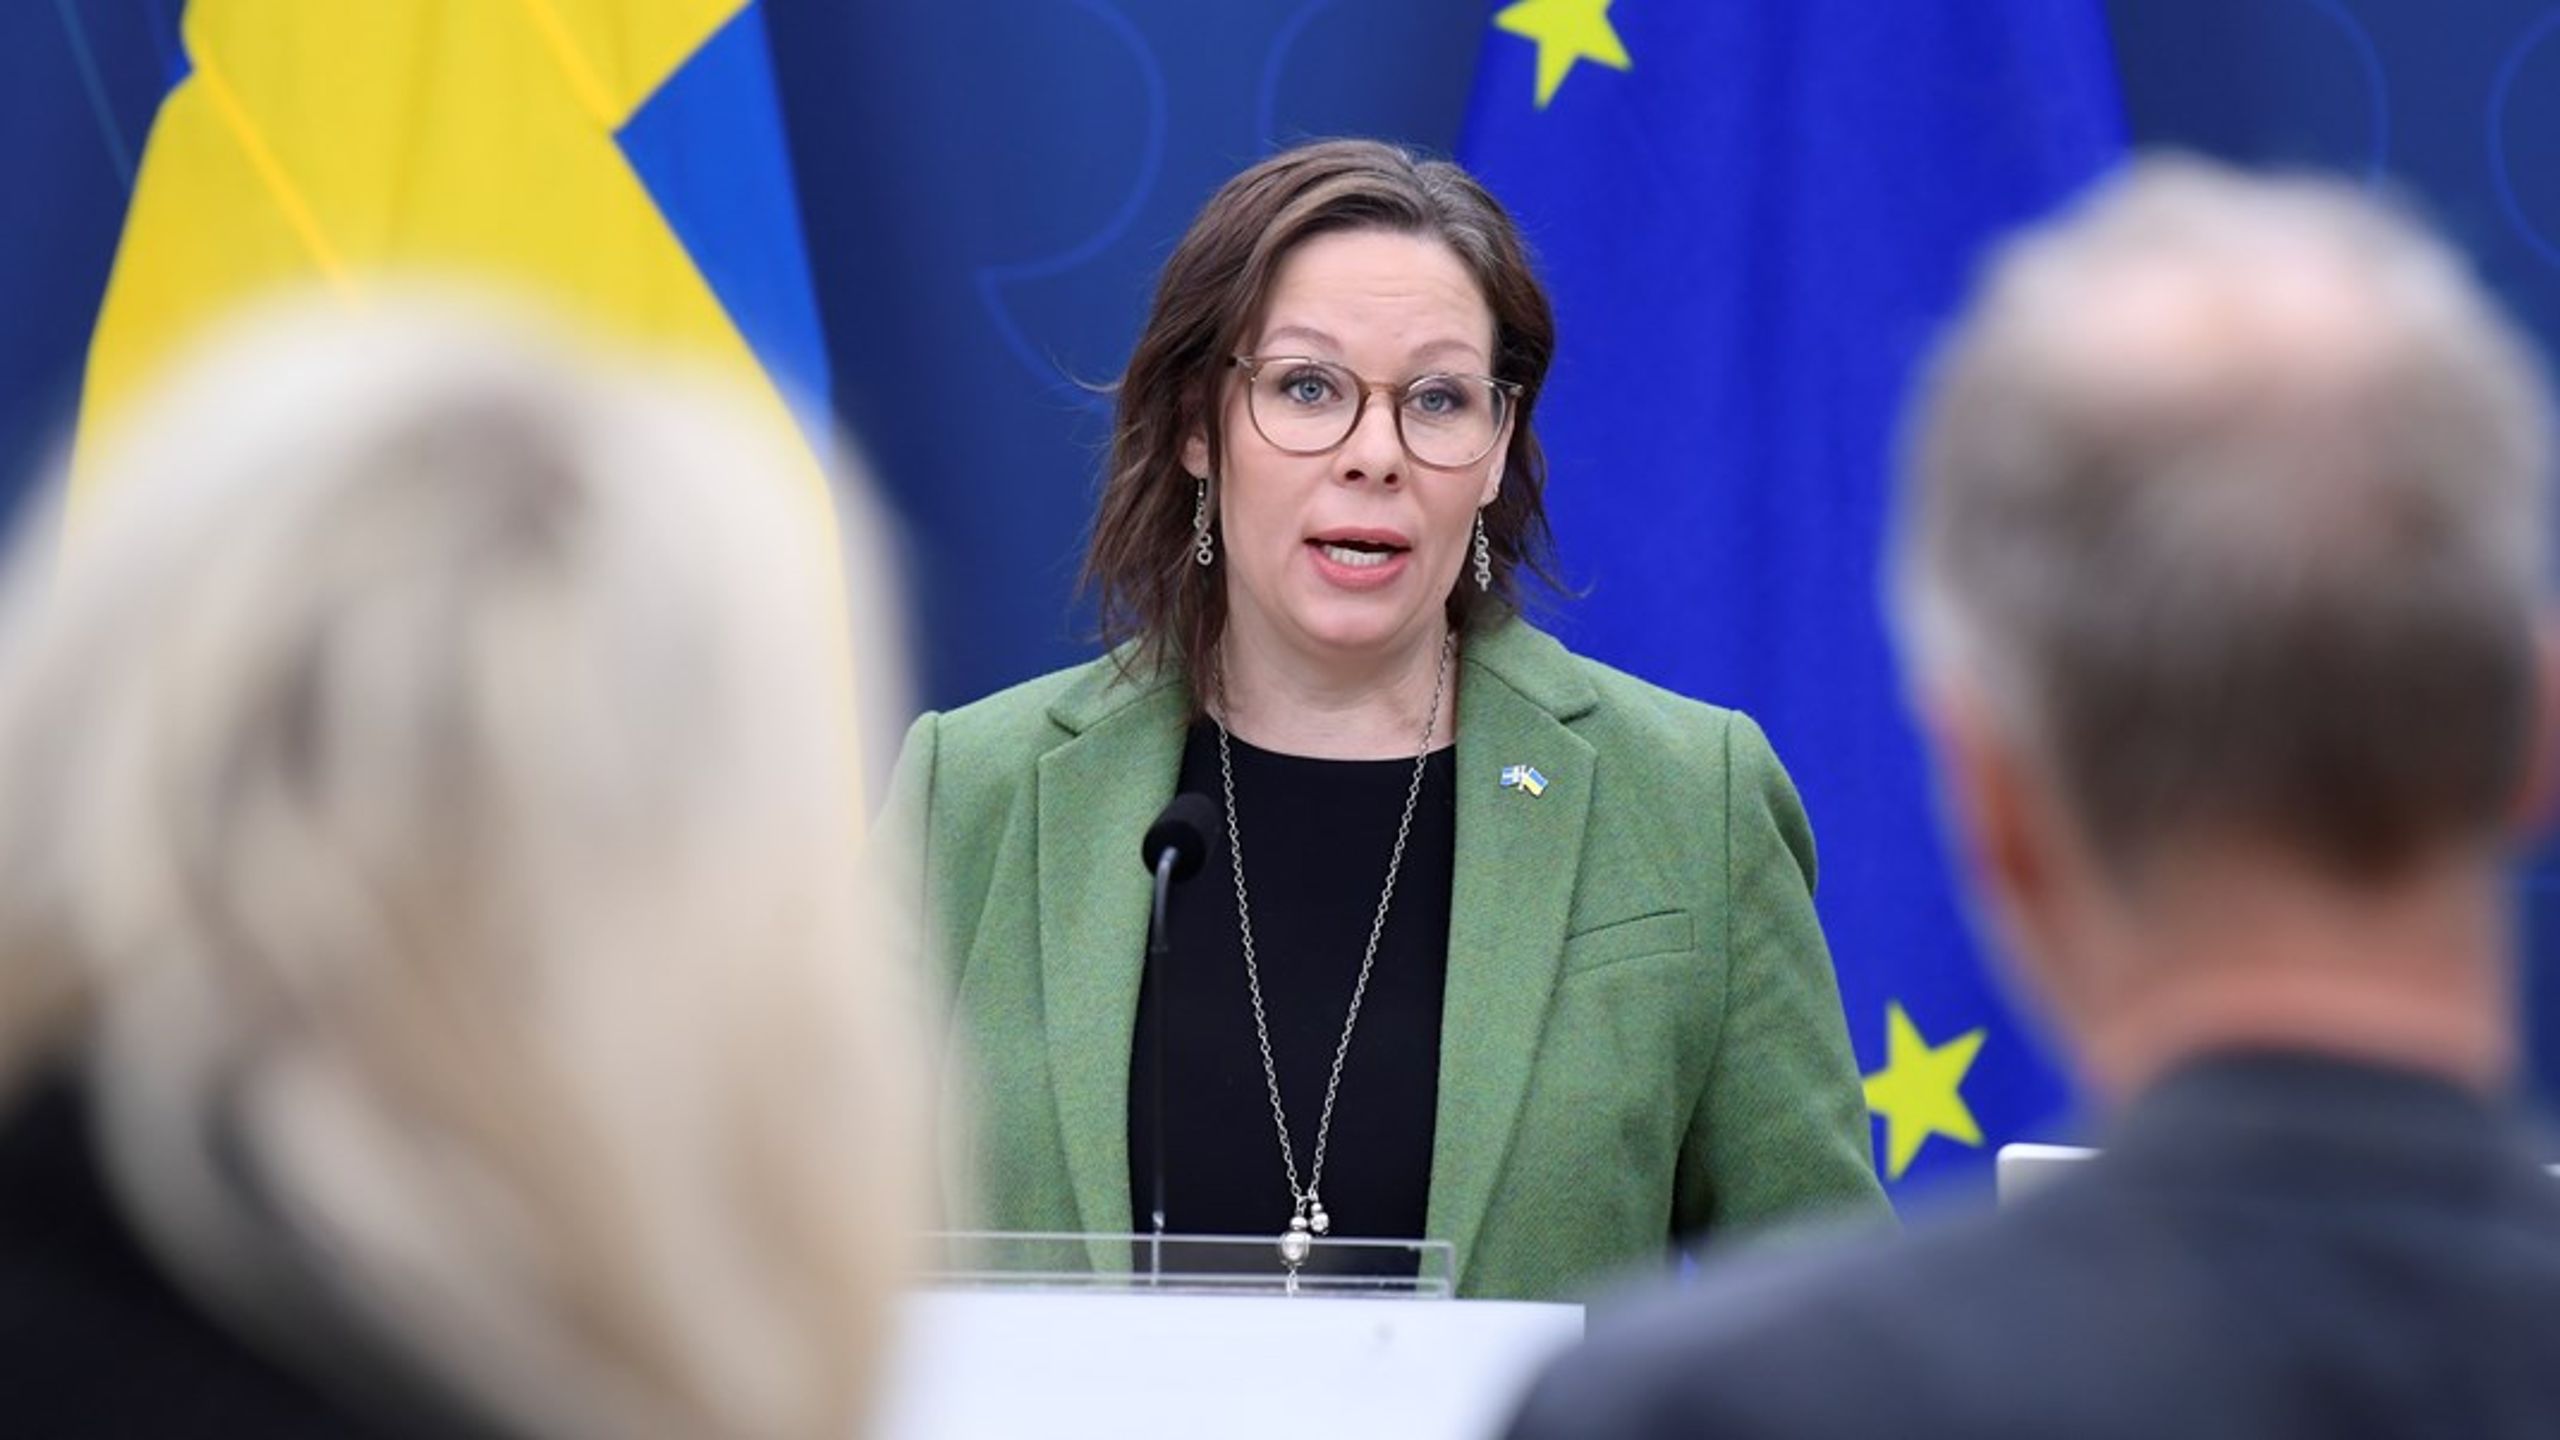 ”Vi ska inte längre dela ut medborgarskap till unga människor som har begått mycket grova brott eller är misstänka för sådana”, säger migrationsminister Maria Malmer Stenergard vid en pressträff.<br>